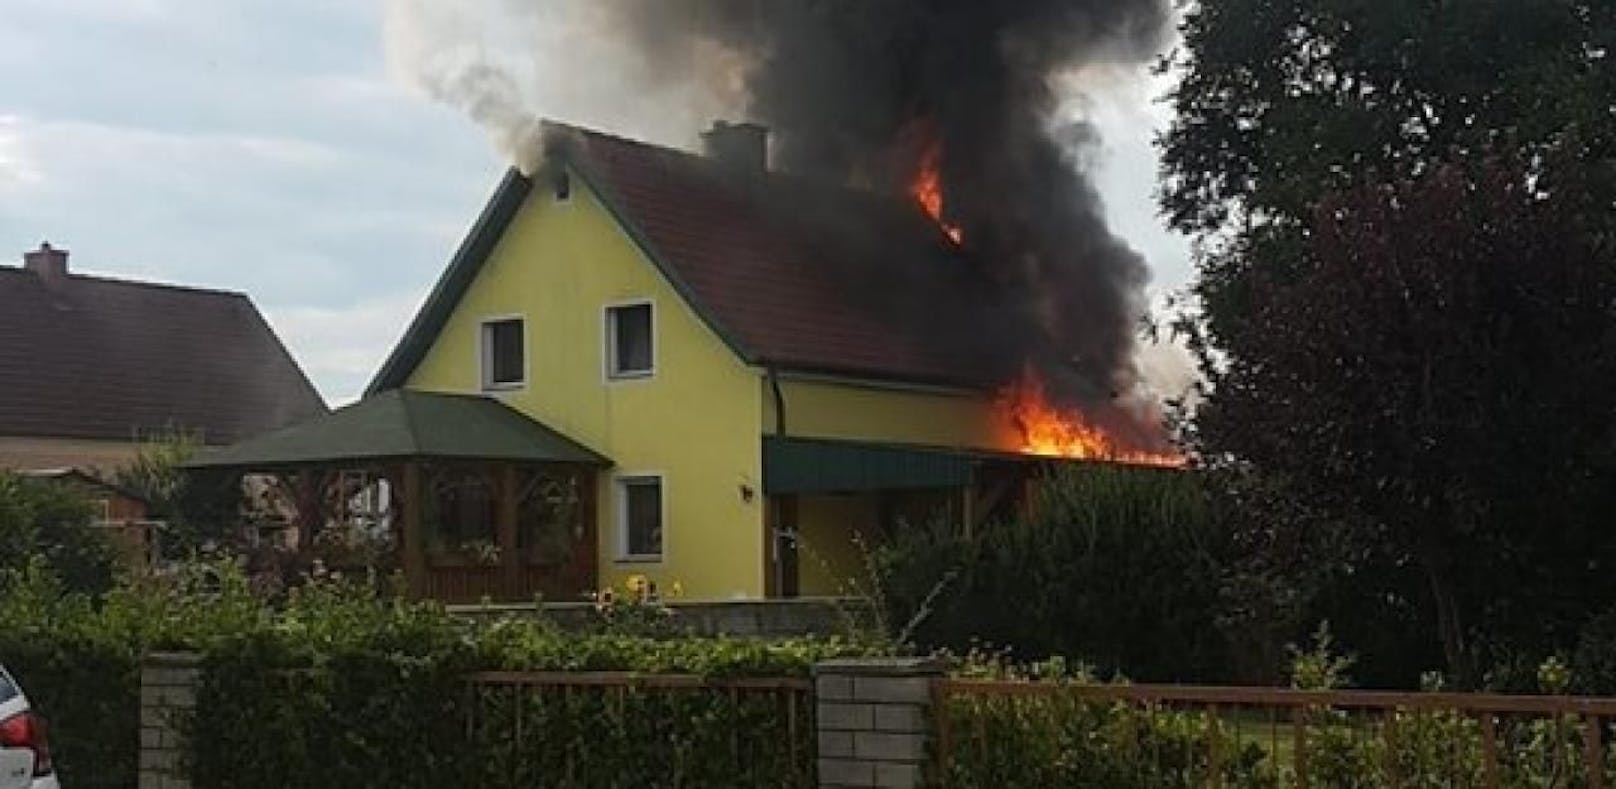 Wohnhaus brannte: Katze aus Flammen gerettet